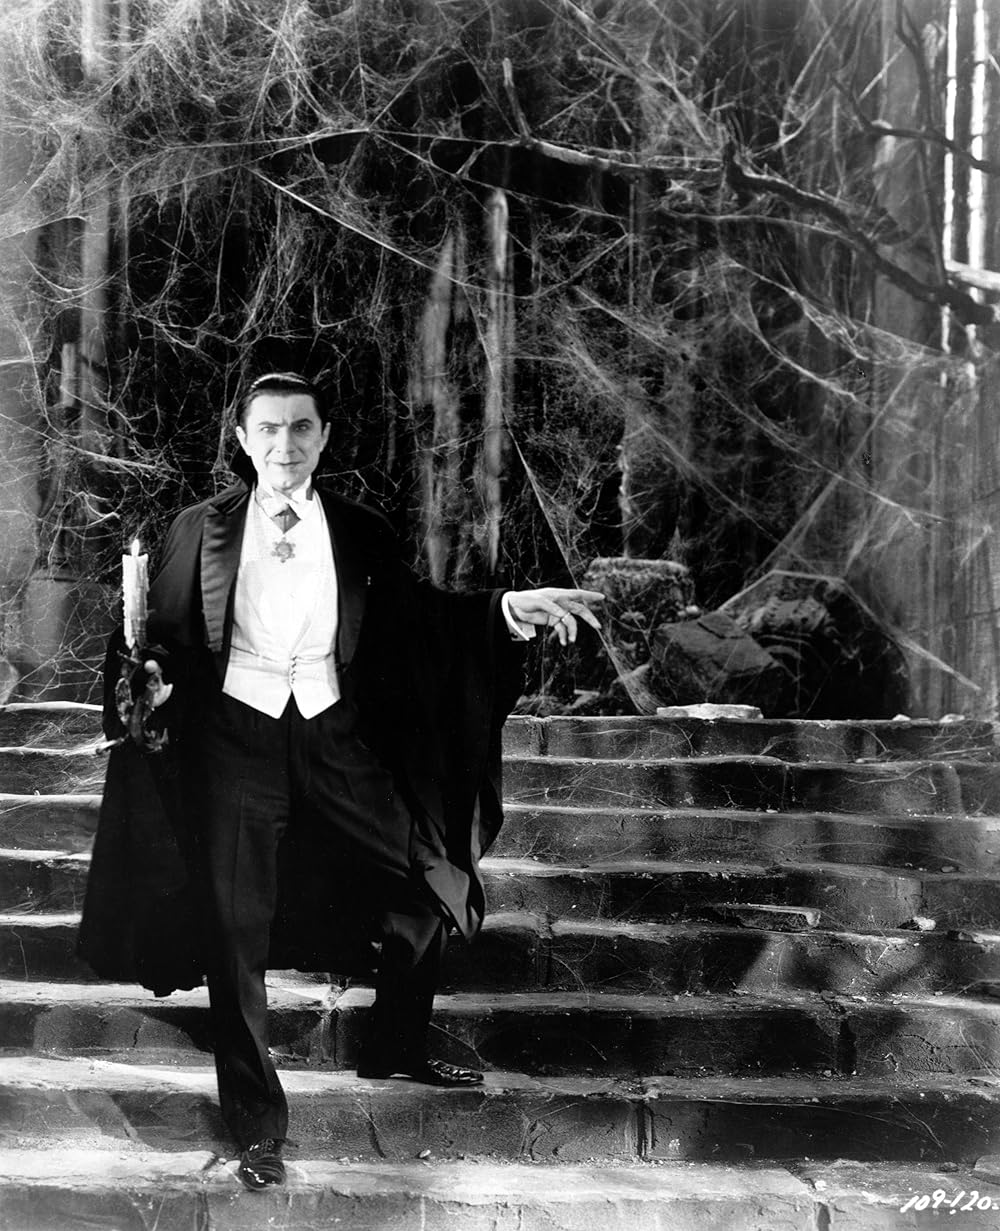 "Good evening. I am Dracula. I bid you welcome."